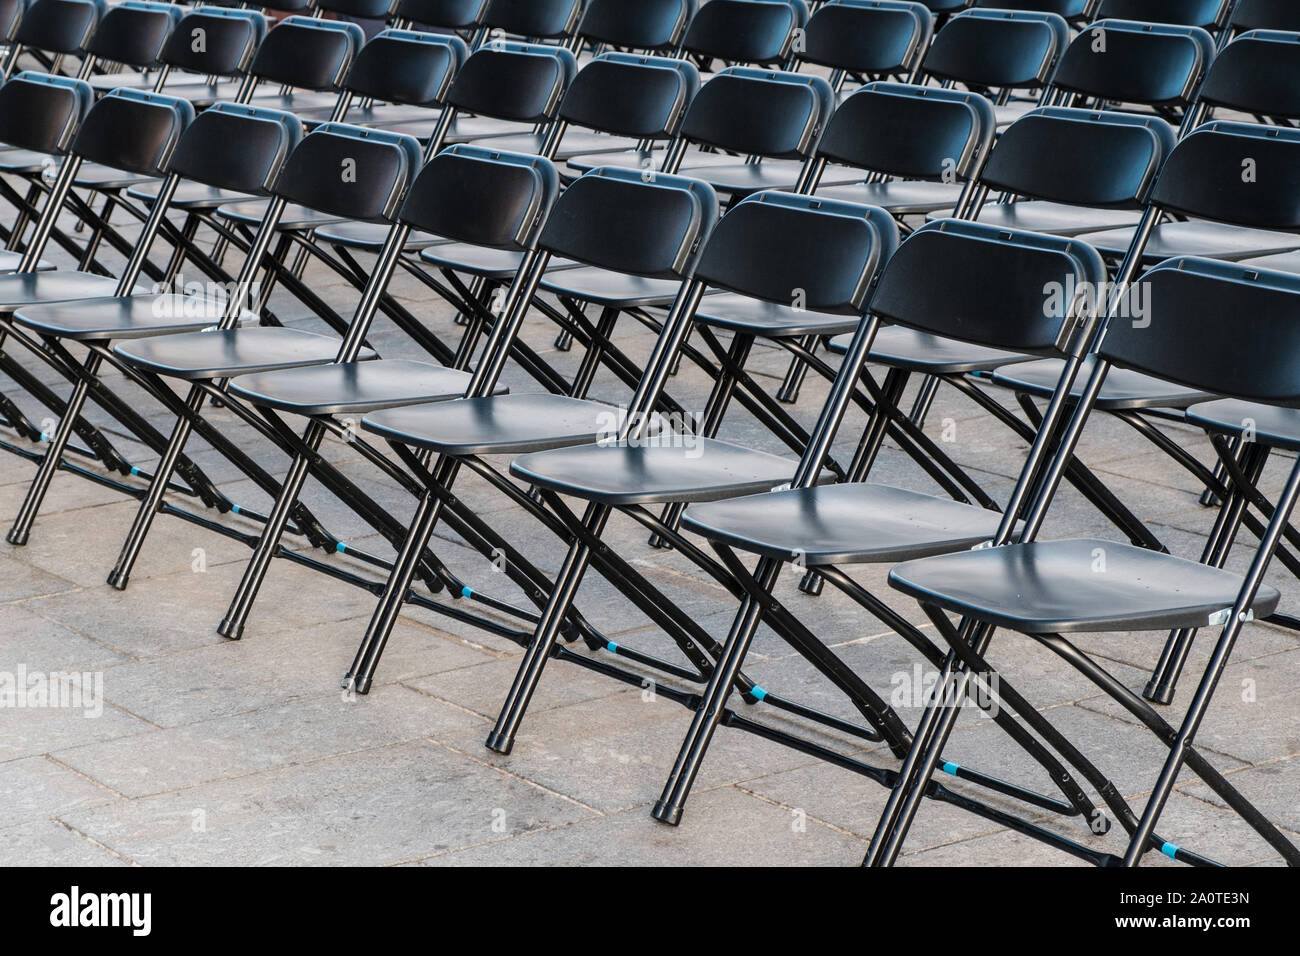 Reihen von Klappstühle, leere Sitze - Stuhl Zeile Stockfoto